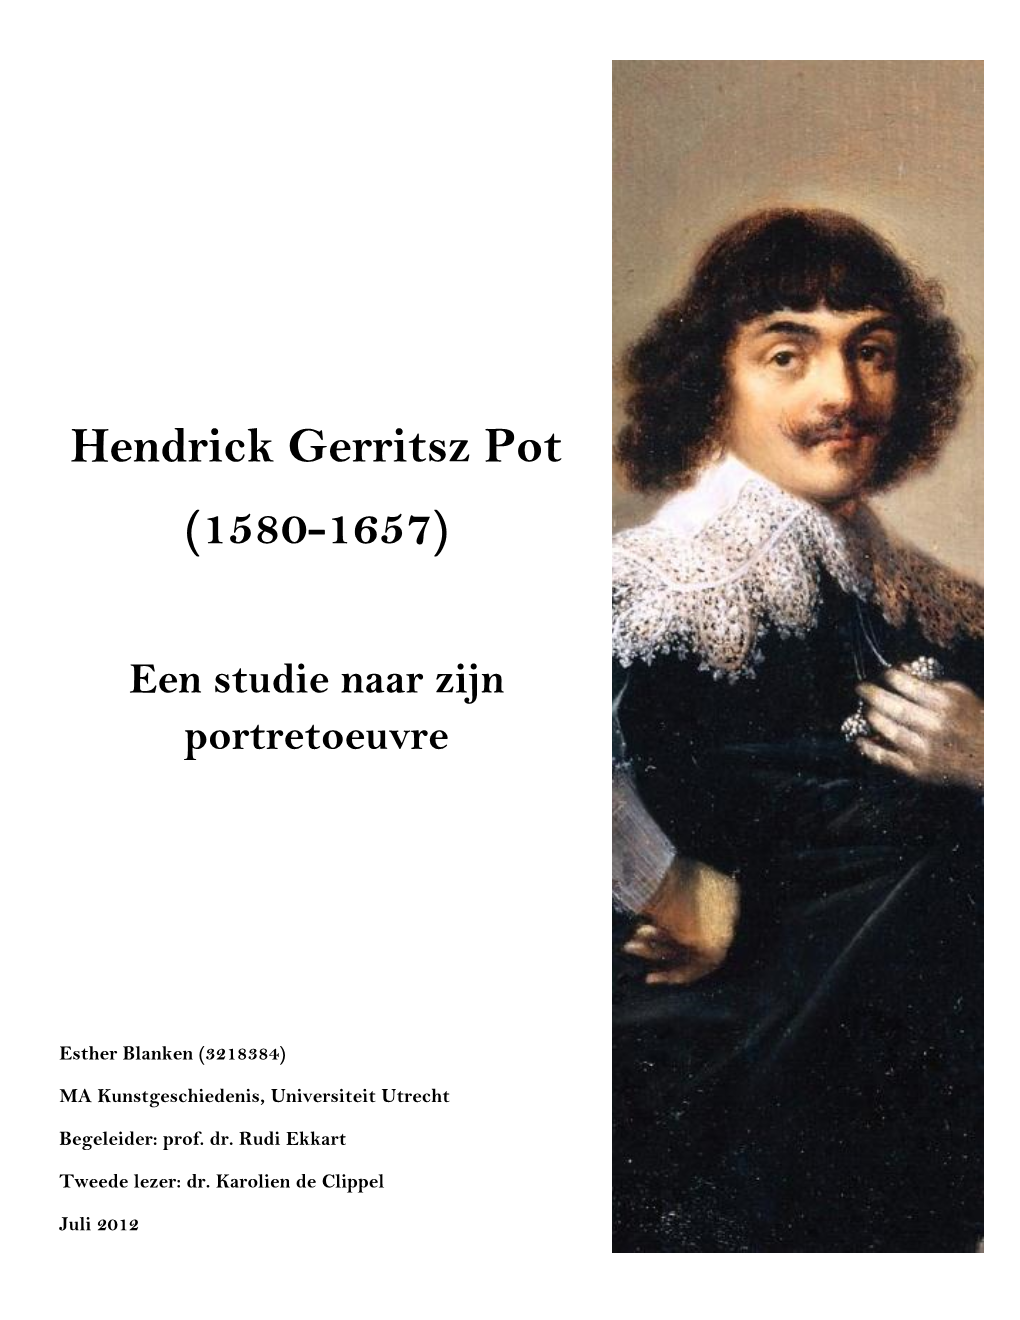 Hendrick Gerritsz Pot (1580-1657)